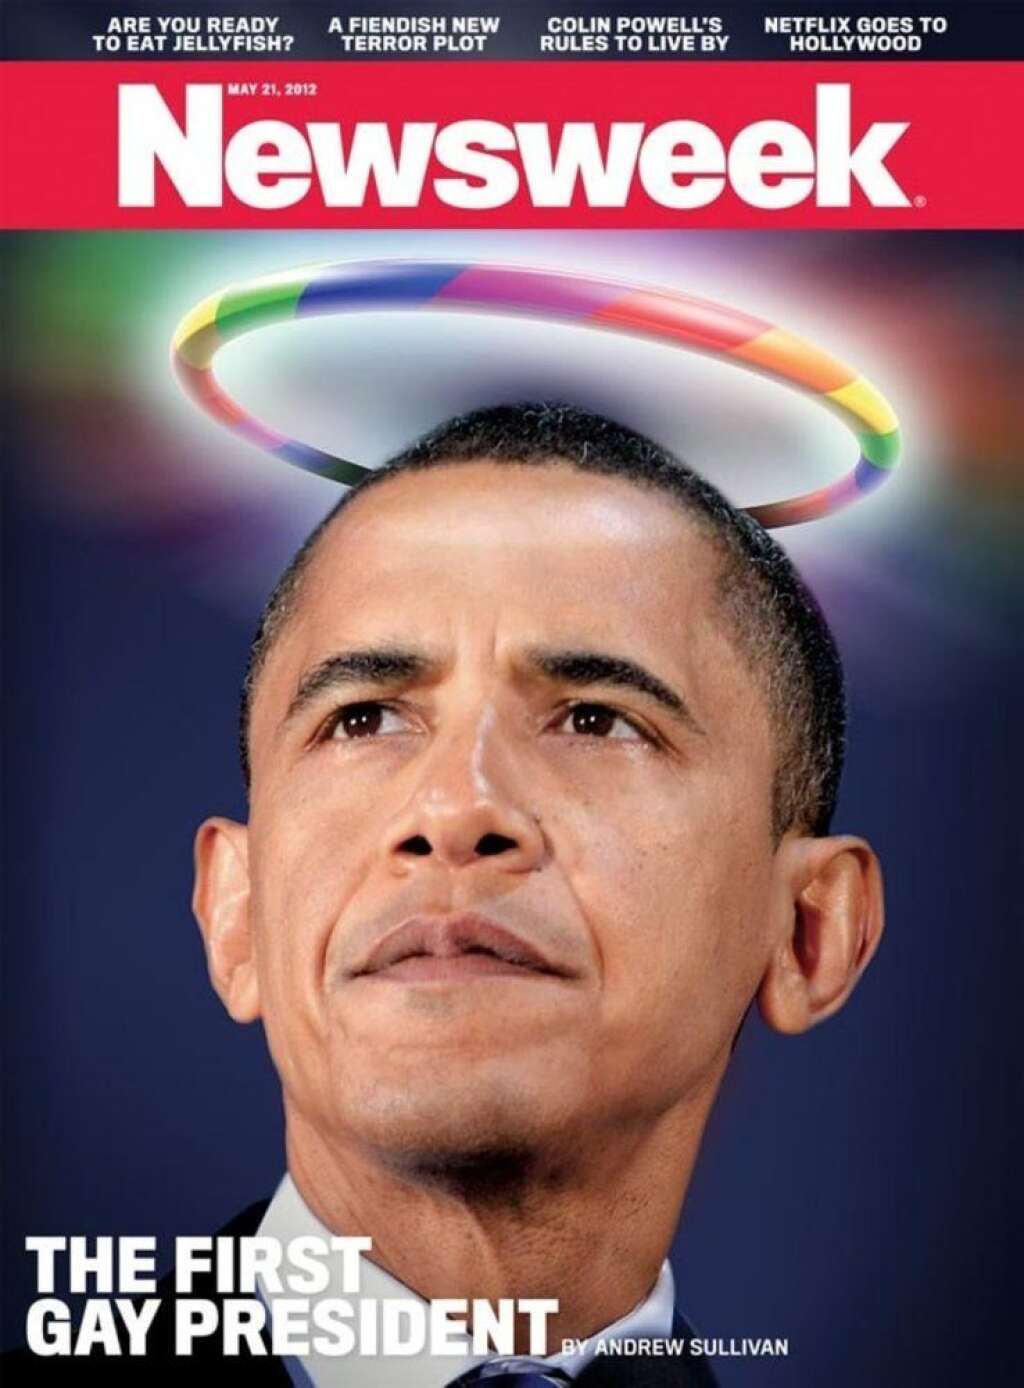 L'édition du 21 mai 2012 - "Le premier président gay" - le magazine a voulu marquer le coup après que Barack Obama a annoncé son soutien (à titre personnel) à l'ouverture du mariage pour les couples homosexuels.